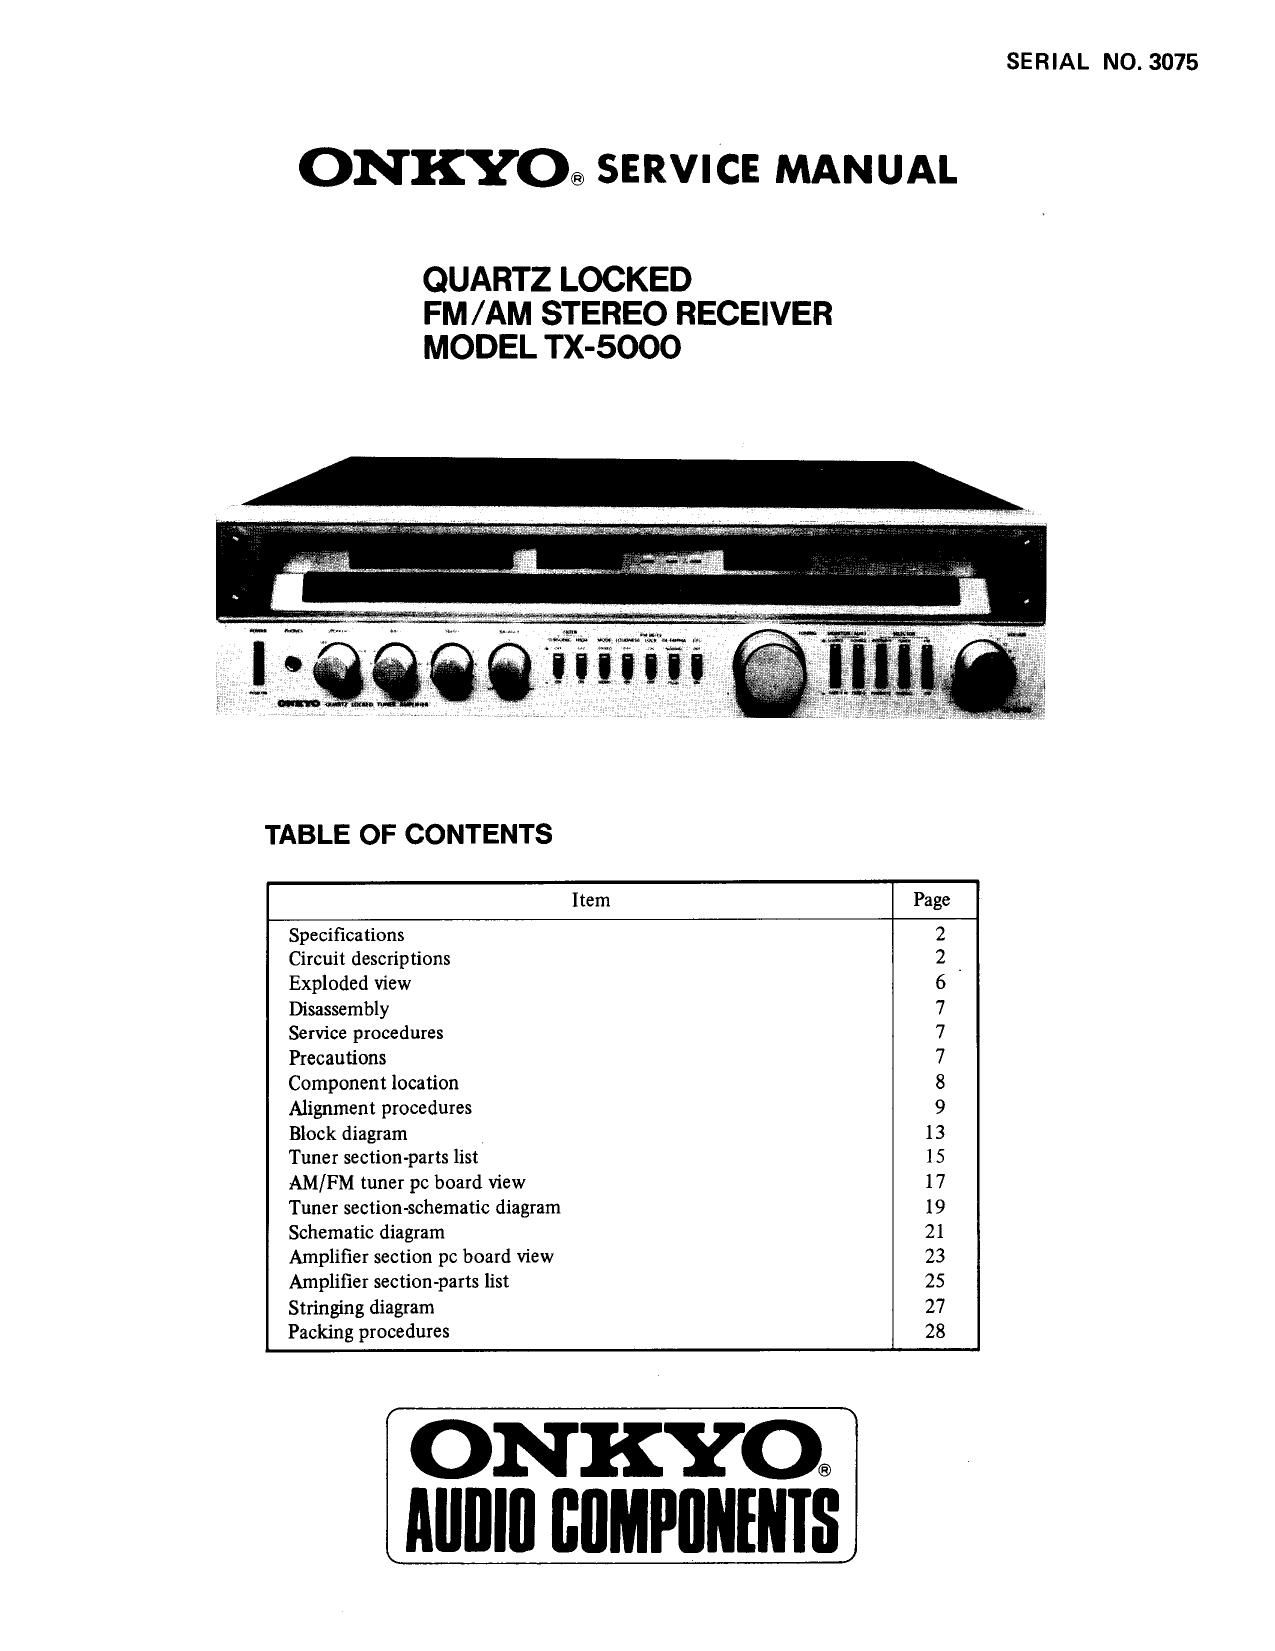 Onkyo TX 5000 Service Manual